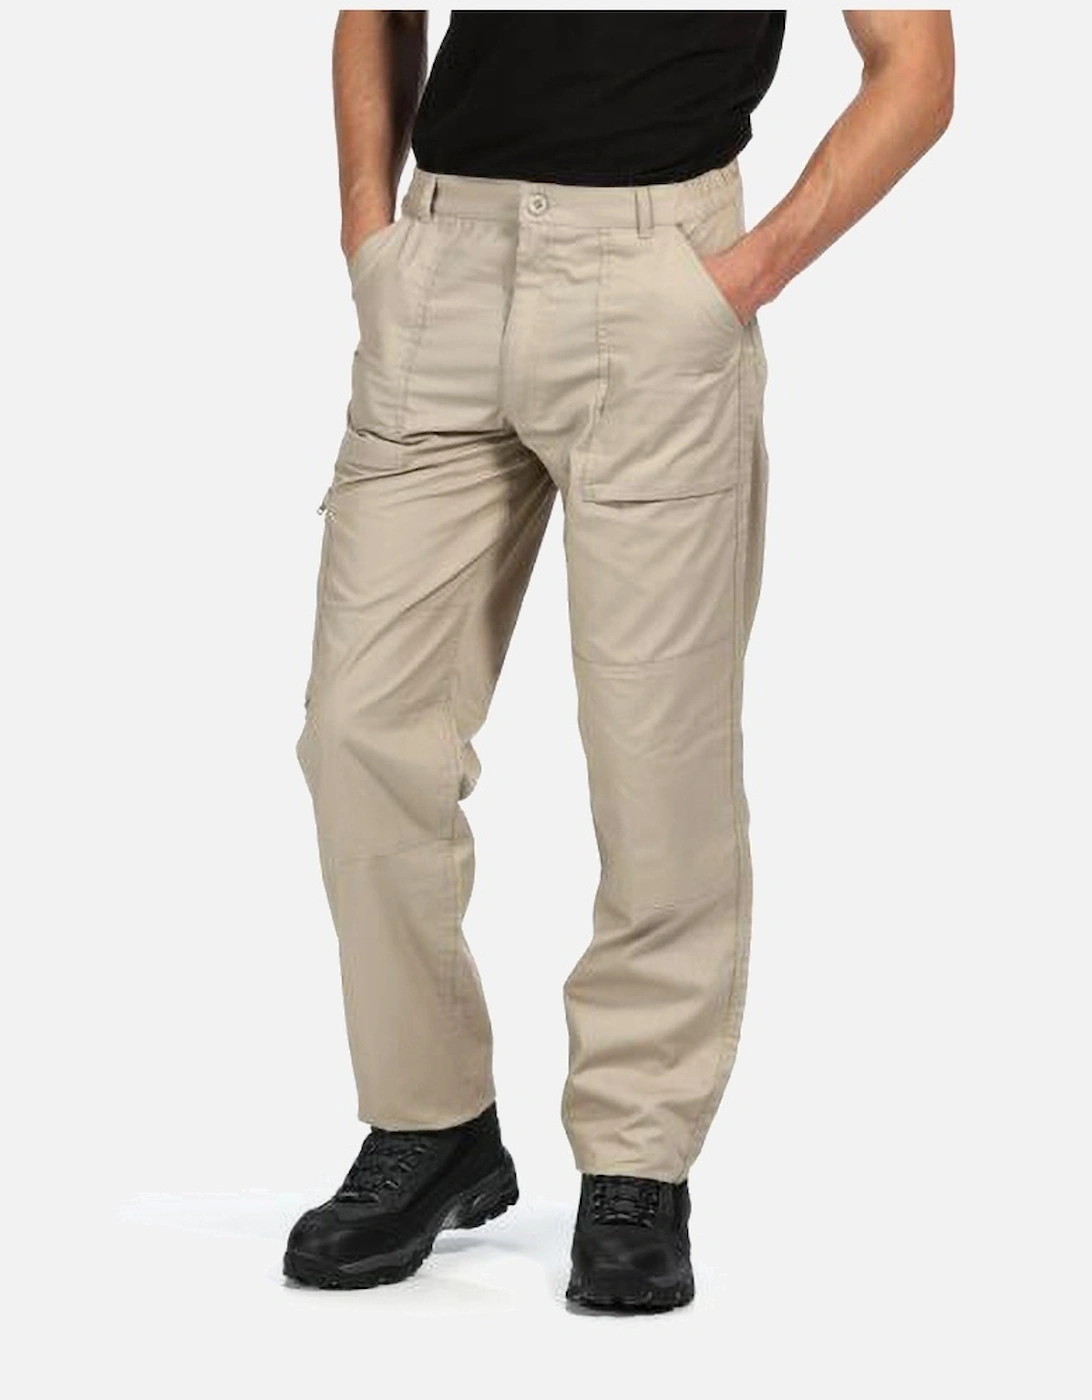 Mens New Action Trouser (Regular) / Pants